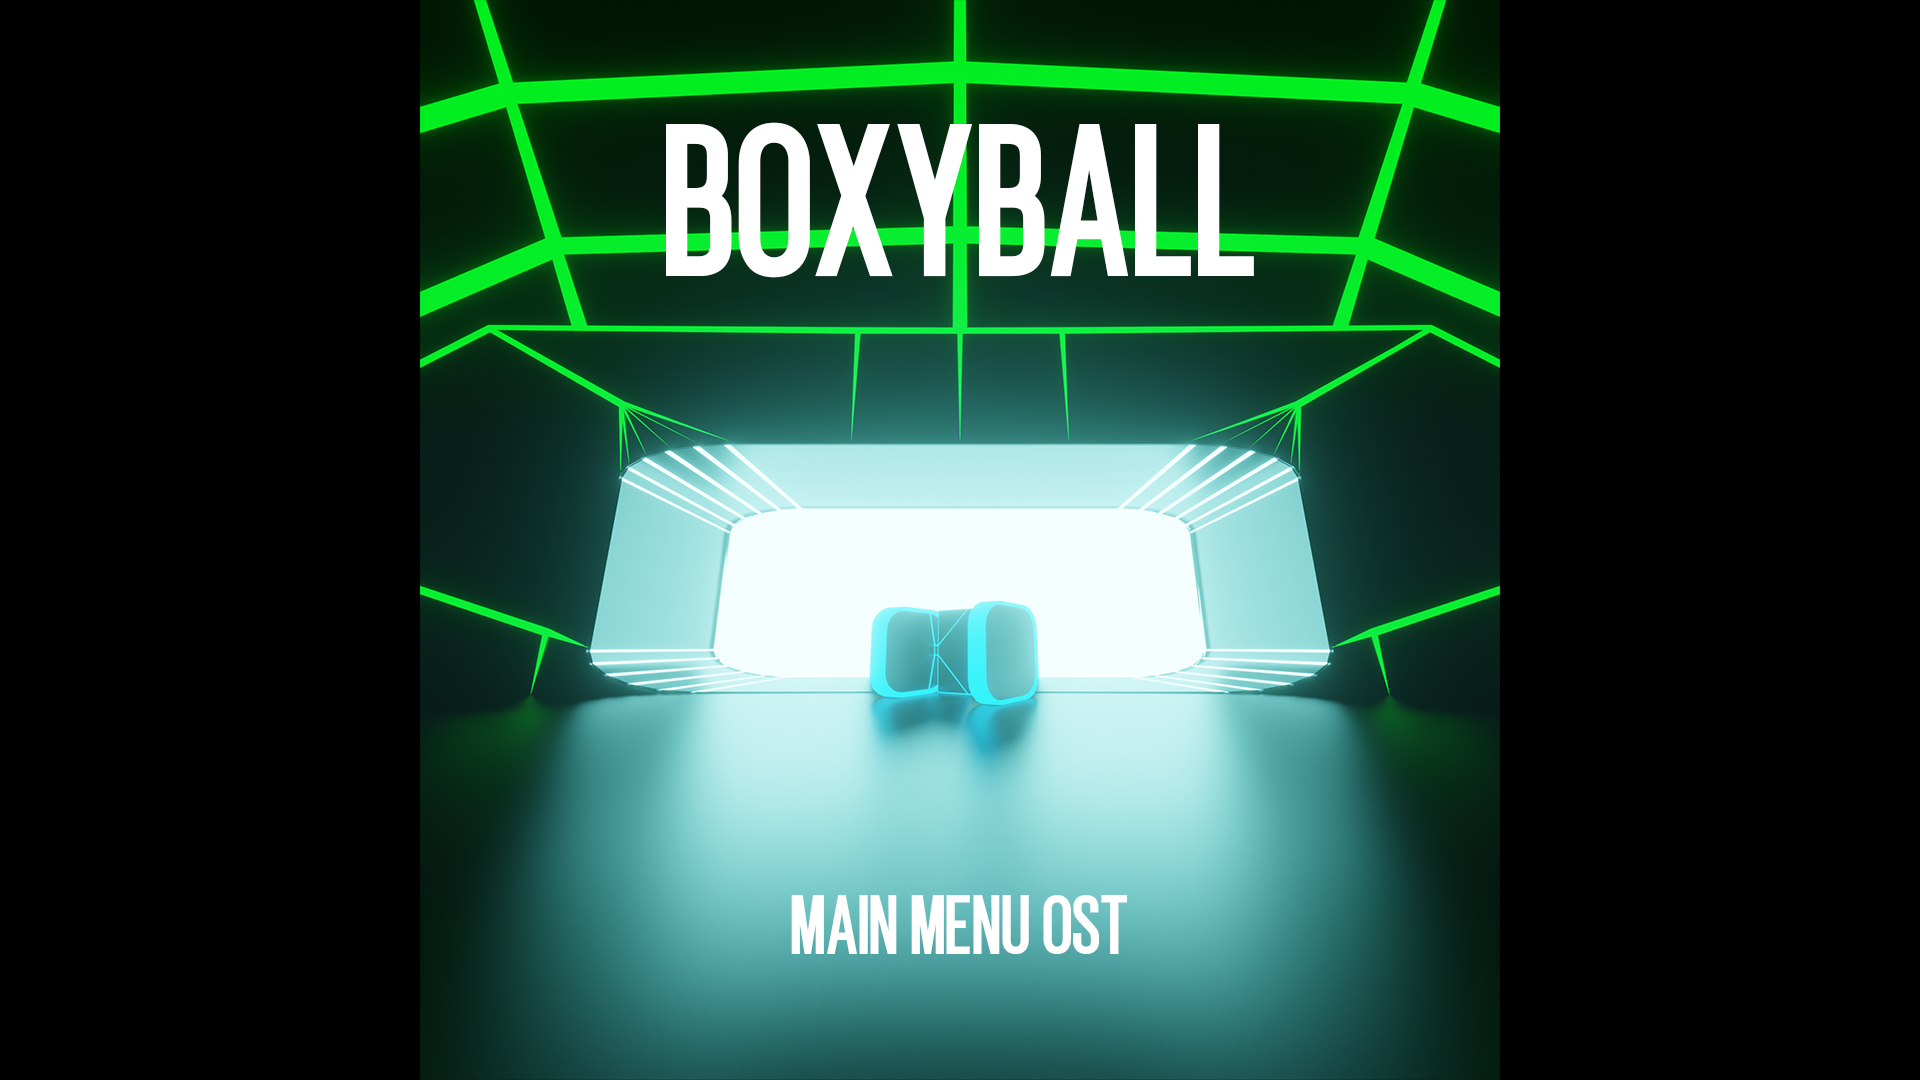 Boxyball